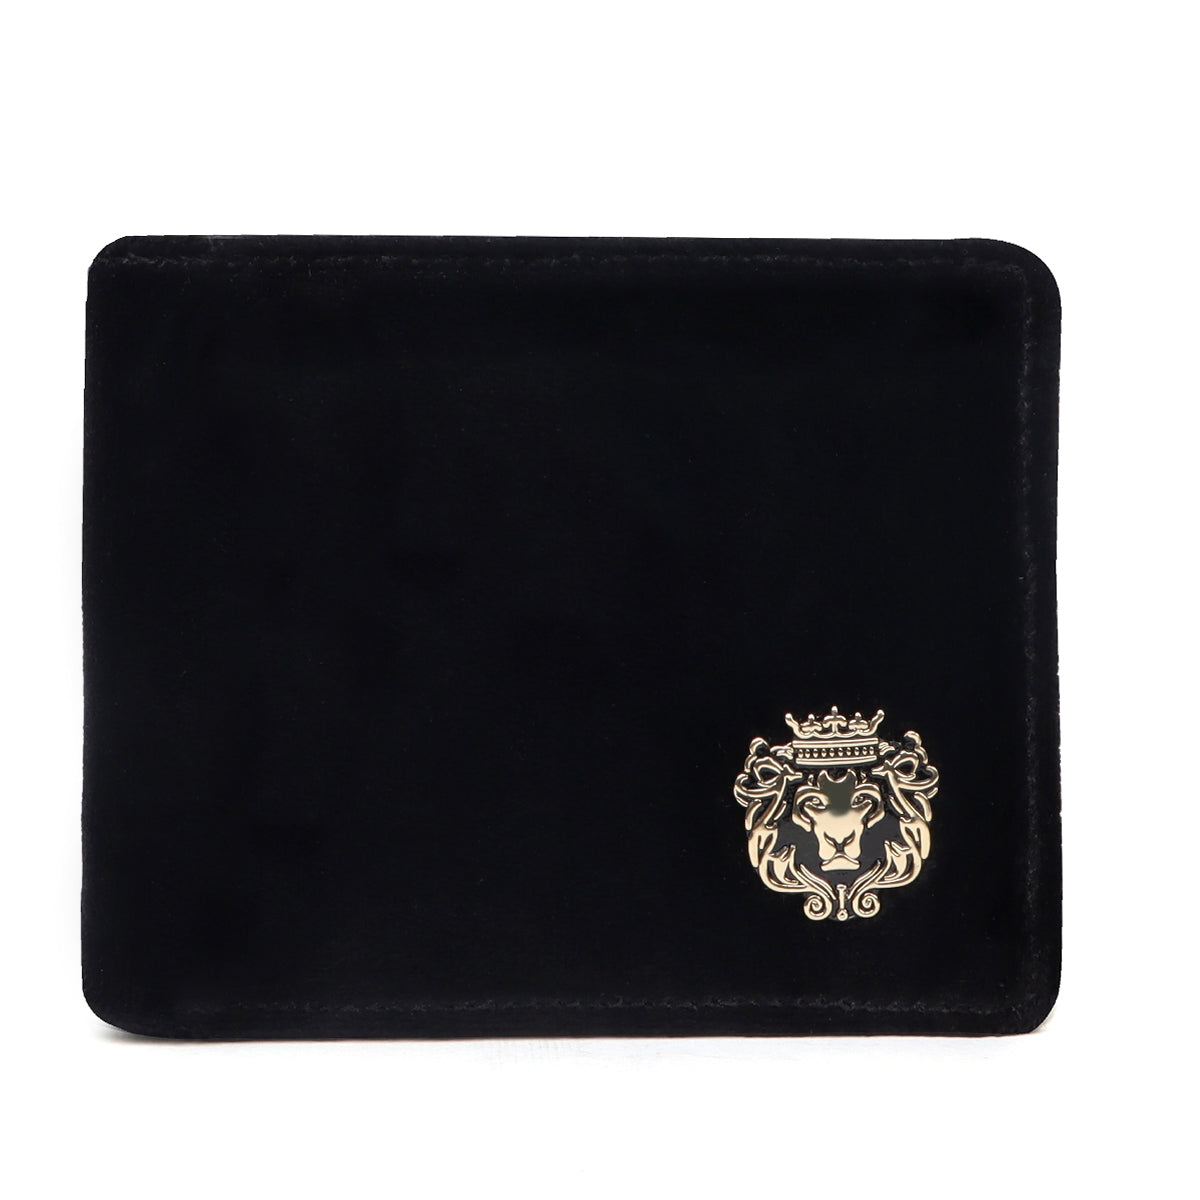 Black Italian Velvet Wallet For Men With Silver Metal Lion Logo By Brune & Bareskin